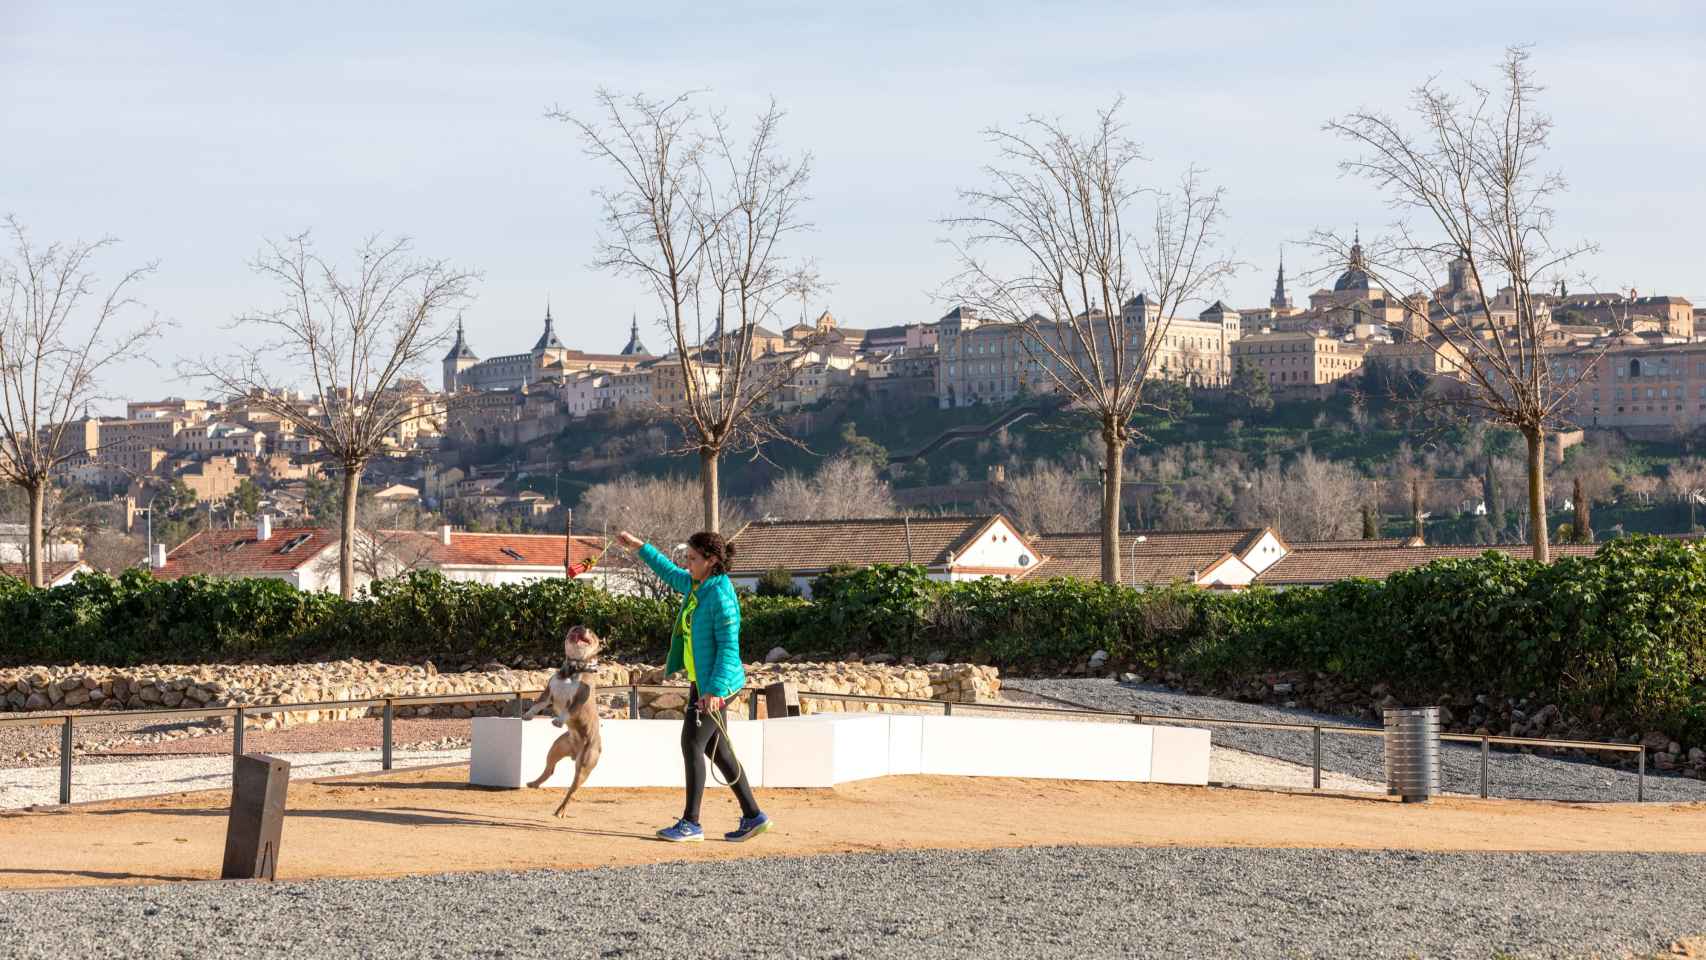 Toledo empieza a disfrutar de Vega Baja tras años de abandono: todas las fotos del nuevo espacio